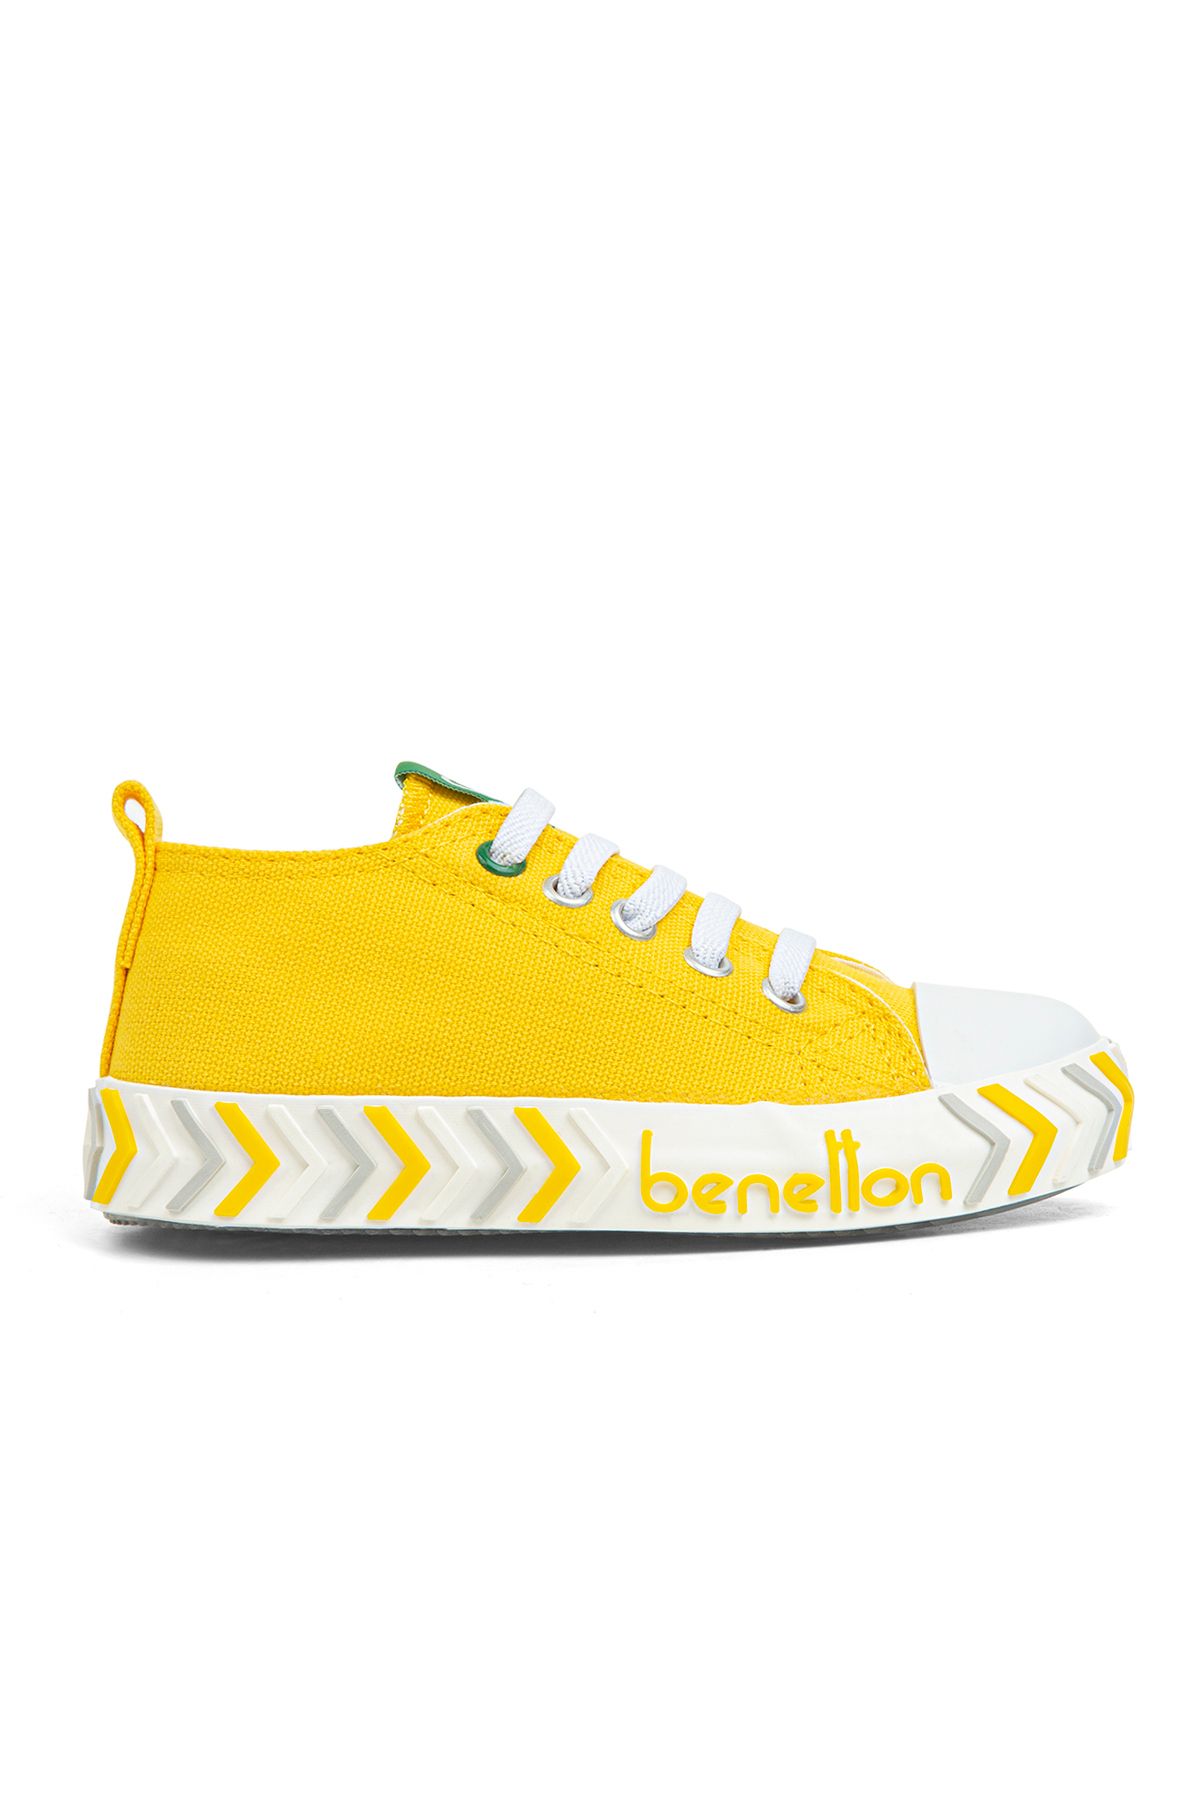 Benetton Lastikli Çocuk Keten Ayakkabı Sarı BN30641-33